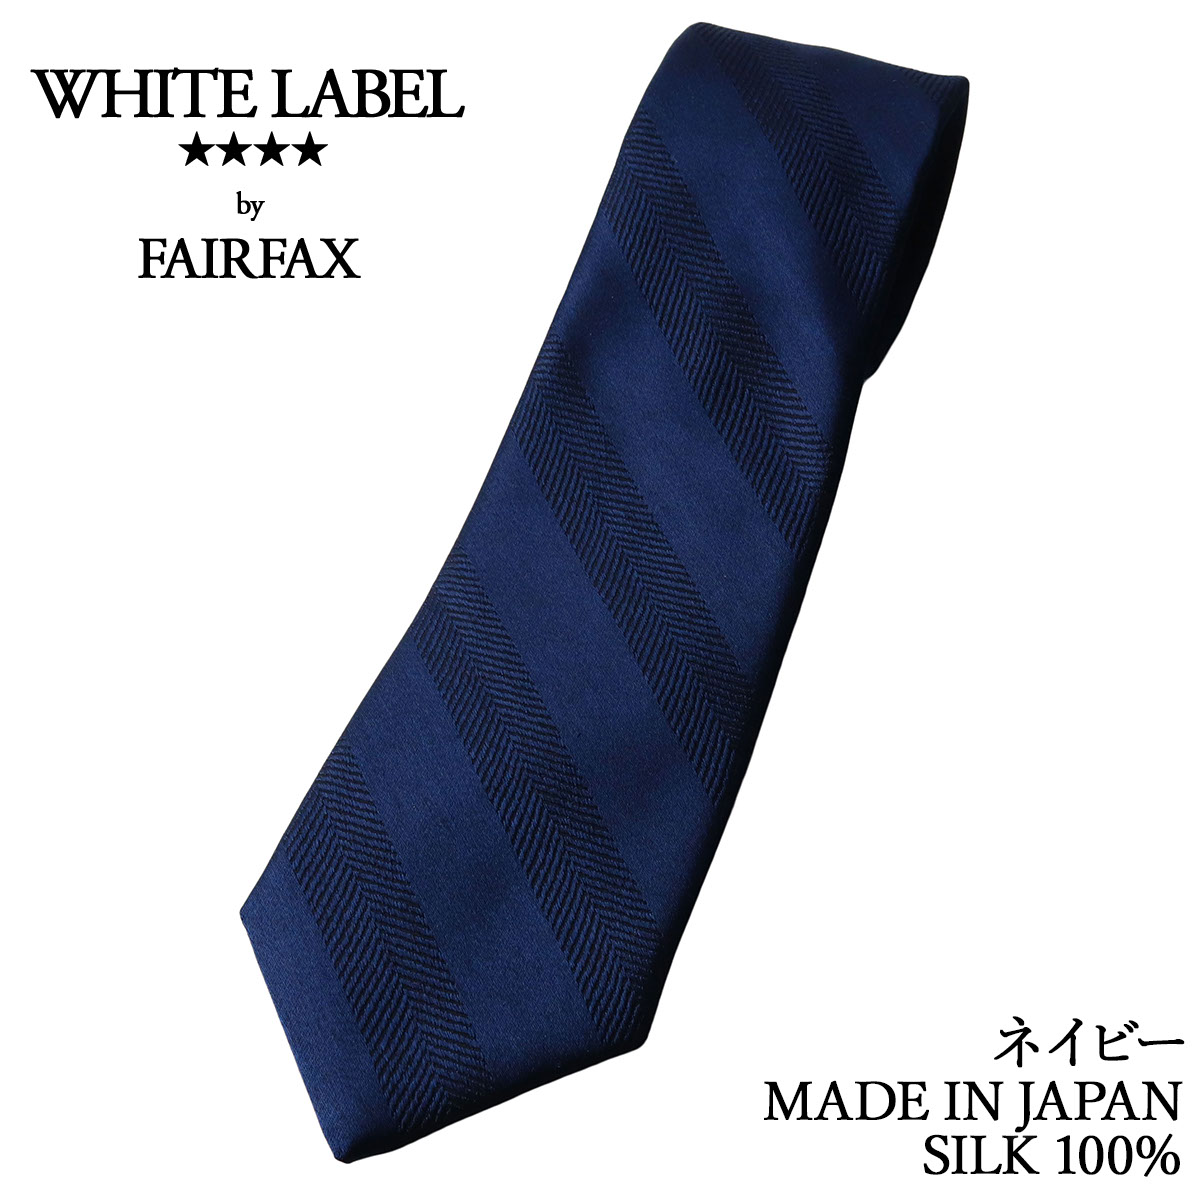 フェアファクス FAIRFAX ネクタイ ビジネス ブランド 無地 シルク100% 日本製 メンズ シャドーストライプ ソリッドタイ 20色 |  父の日 卒業式 就職祝い ギフト